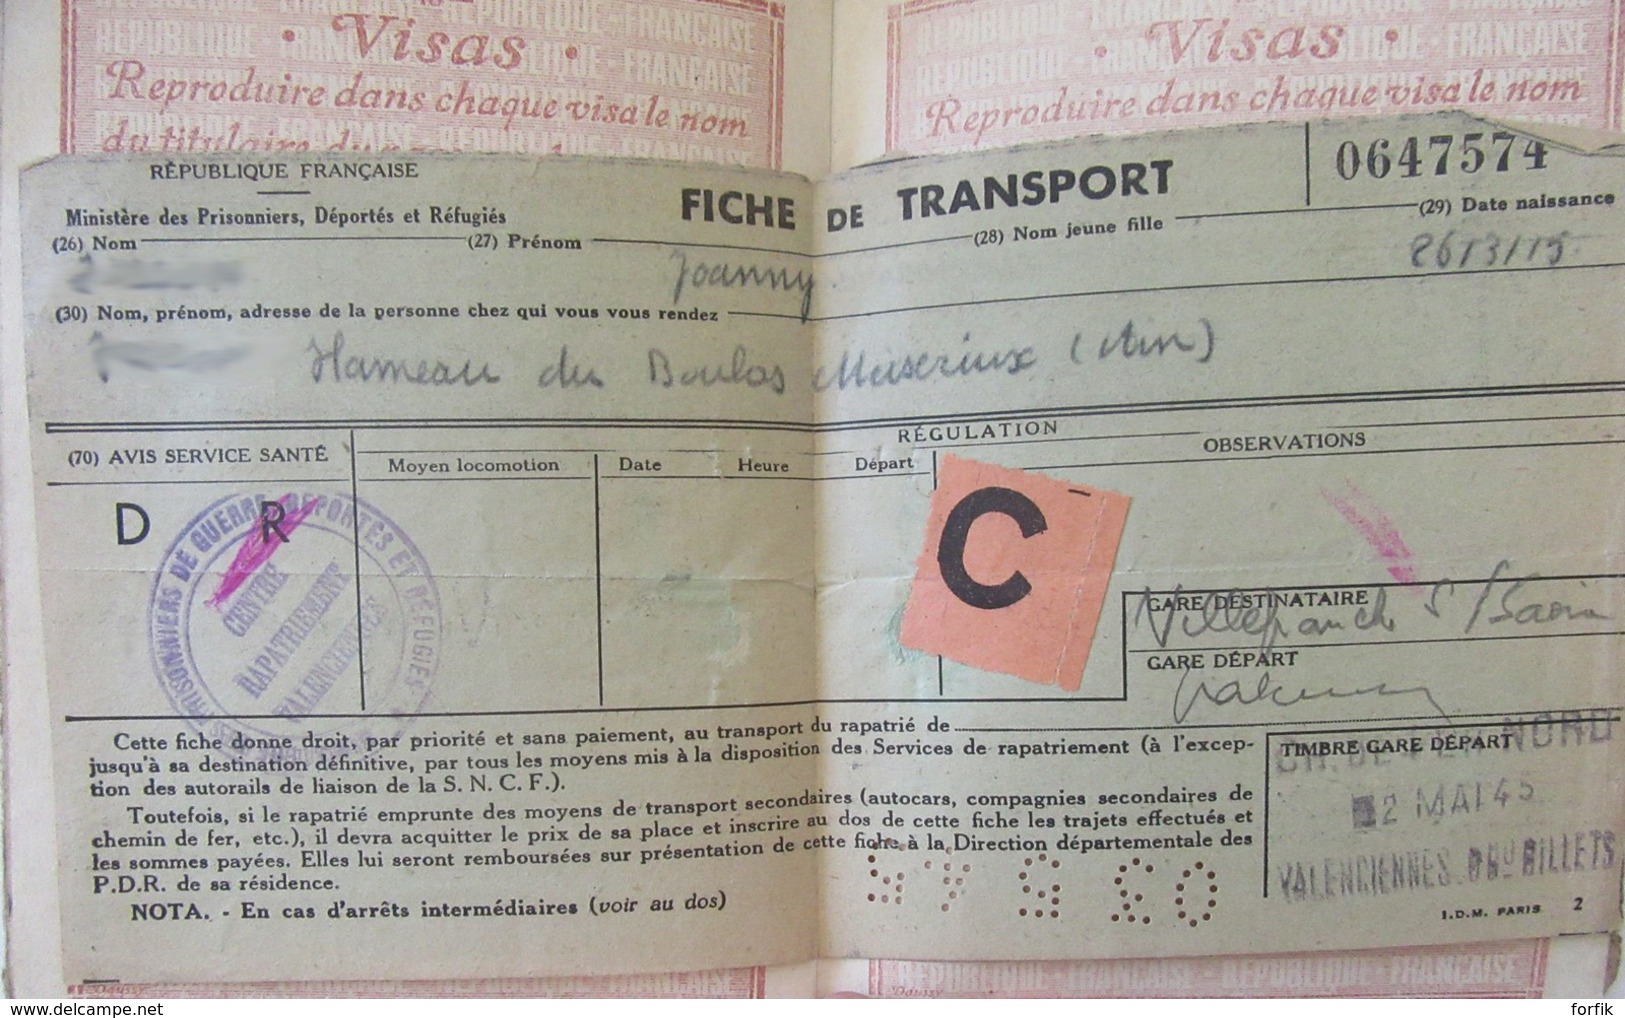 Guerre 39-45 Passeport français pour l'Allemagne avec visas Allemands - délivré en 1943 - Etat moyen